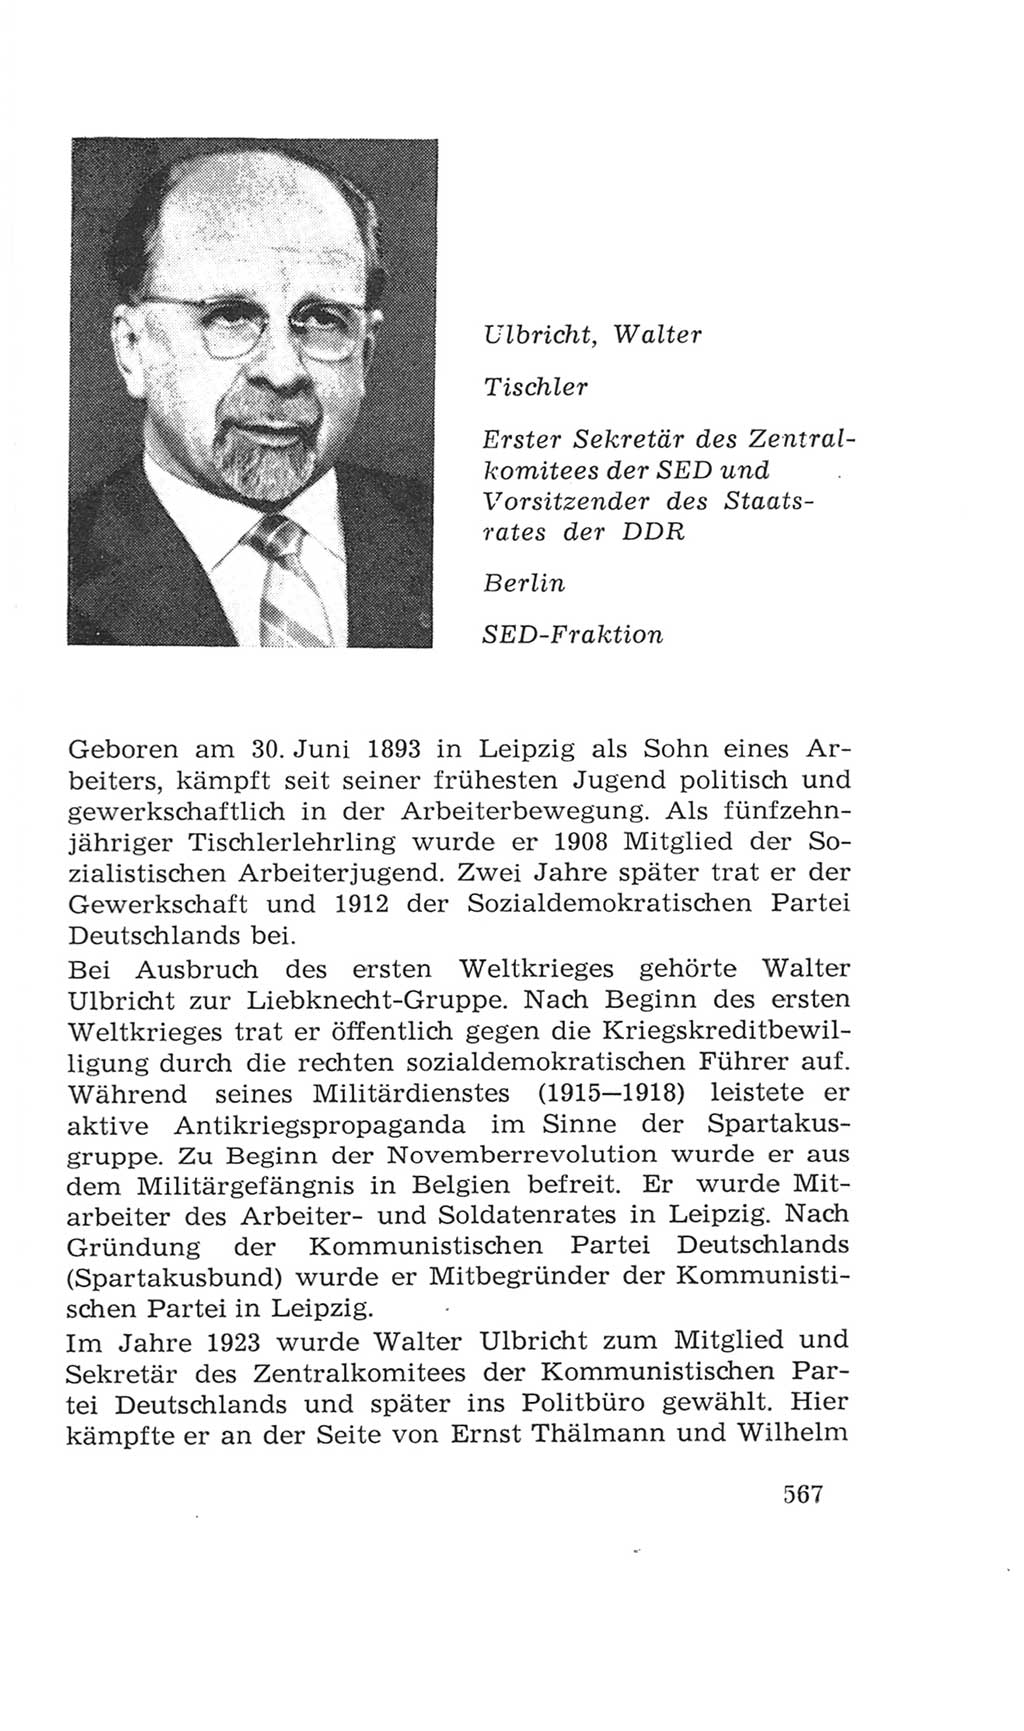 Volkskammer (VK) der Deutschen Demokratischen Republik (DDR), 4. Wahlperiode 1963-1967, Seite 567 (VK. DDR 4. WP. 1963-1967, S. 567)